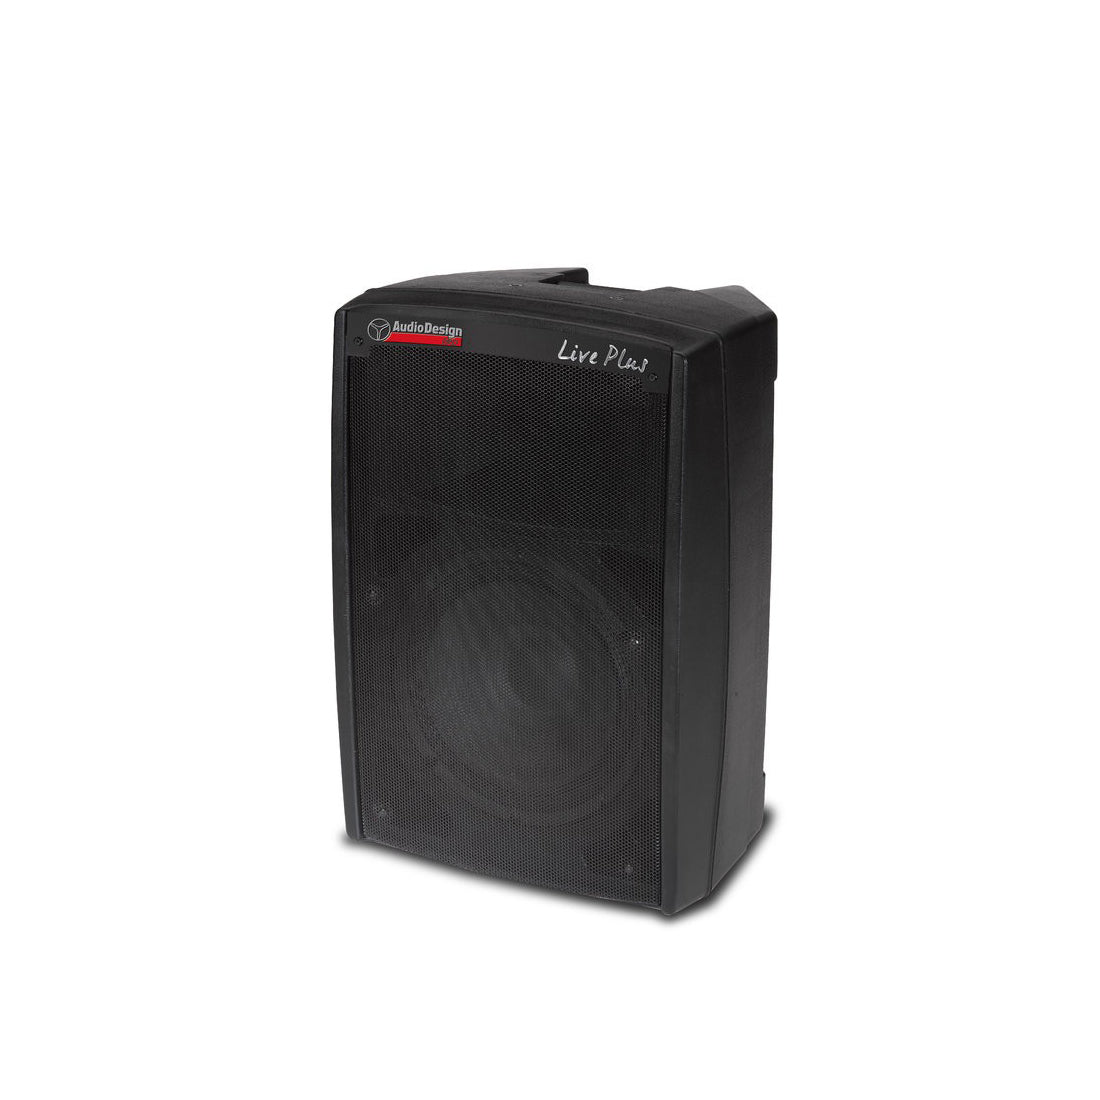 AudioDesign Pro Diffusore professionale attivo a 2 vie, potenza max/RMS, cassa con woofer da 32 cm, altoparlante Live Plus 12